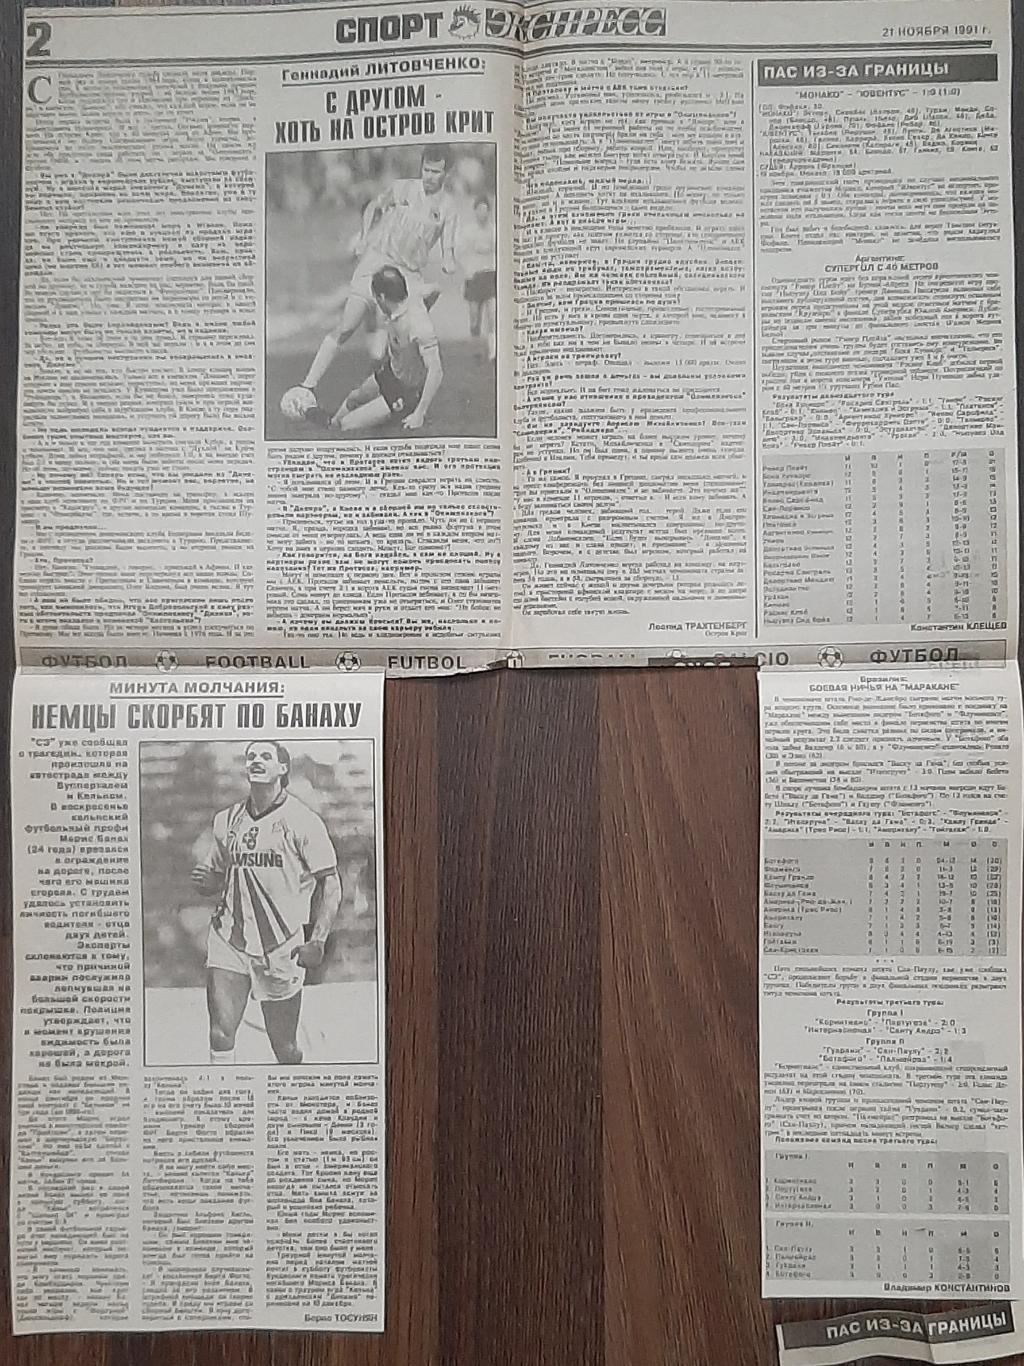 Вирізка з газети Спорт Экспресс #71 (21.11.1991) Суперкубок Манчестер Юнайтед 1